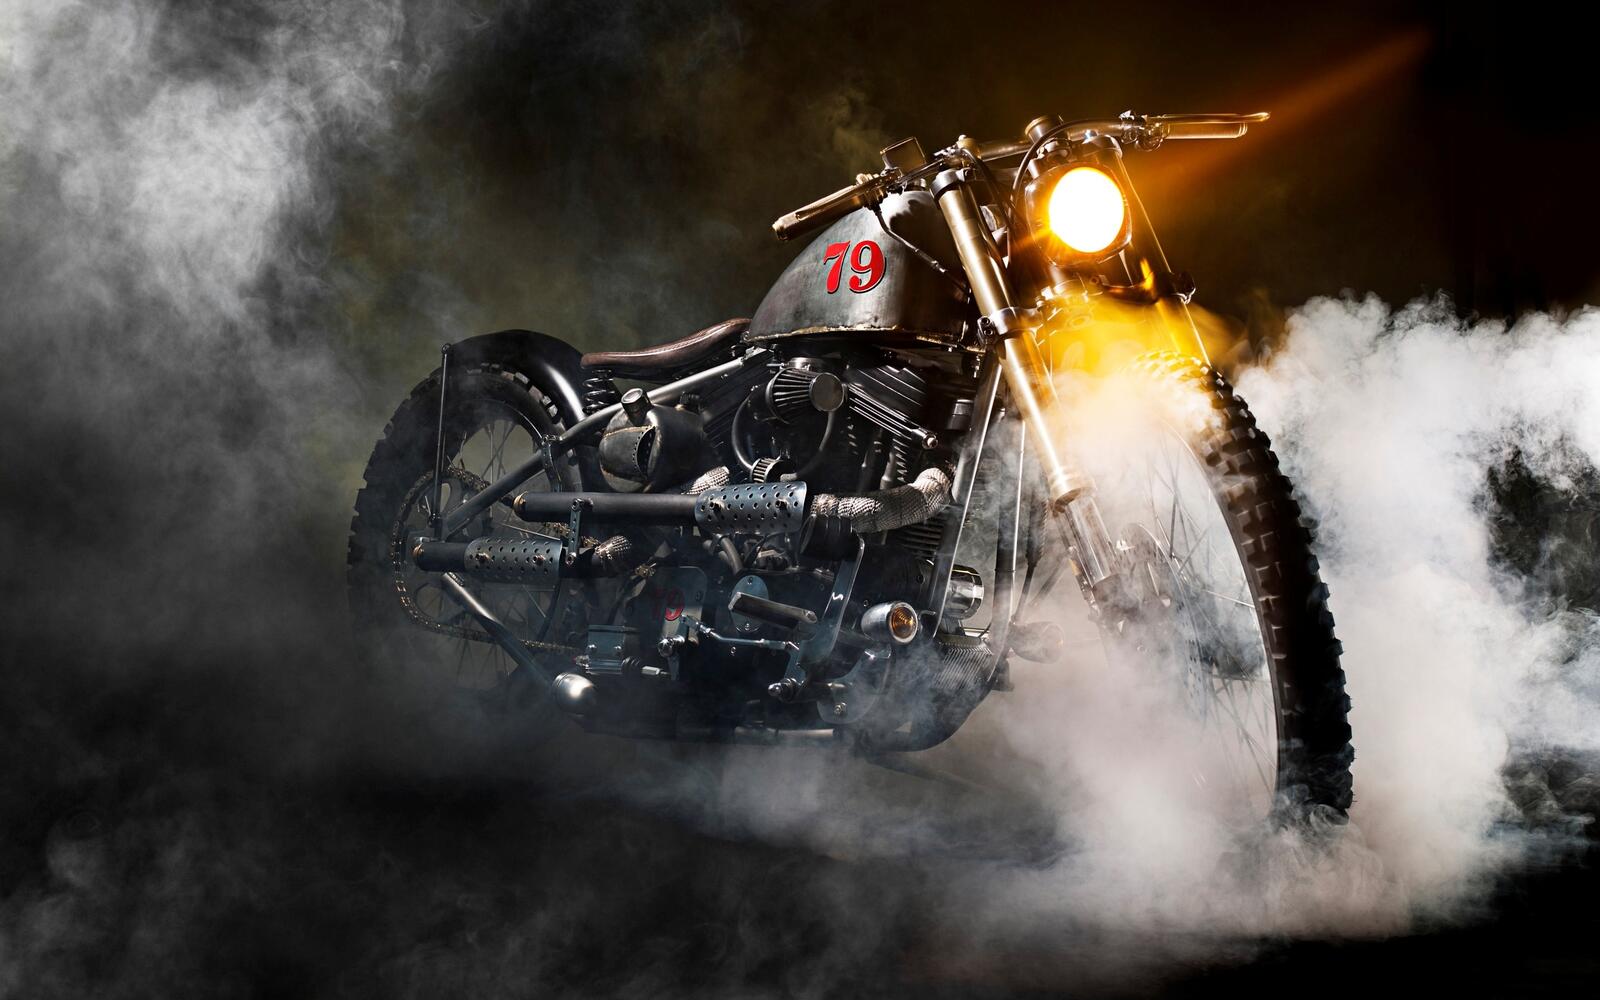 Обои мотоцикл туман свет на рабочий стол